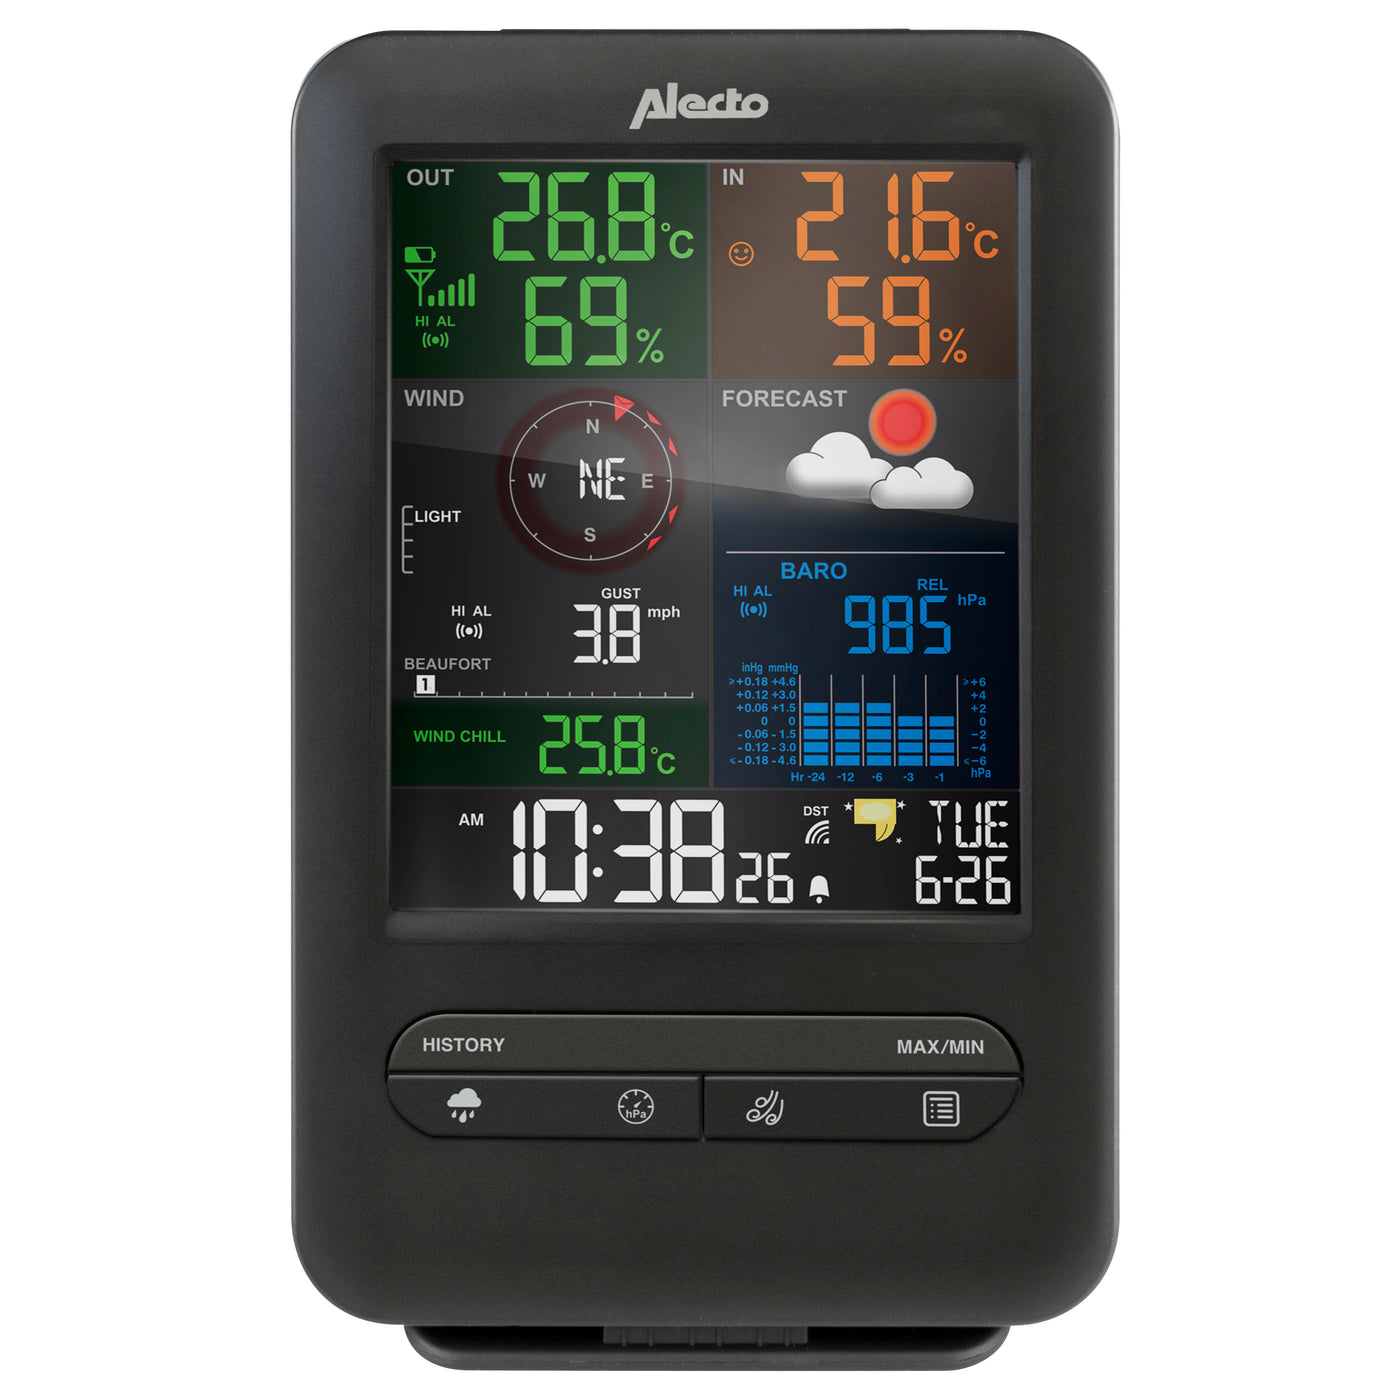 Alecto WS-4900 - Professionelle Wetterstation mit kabellosem Außensensor, schwarz